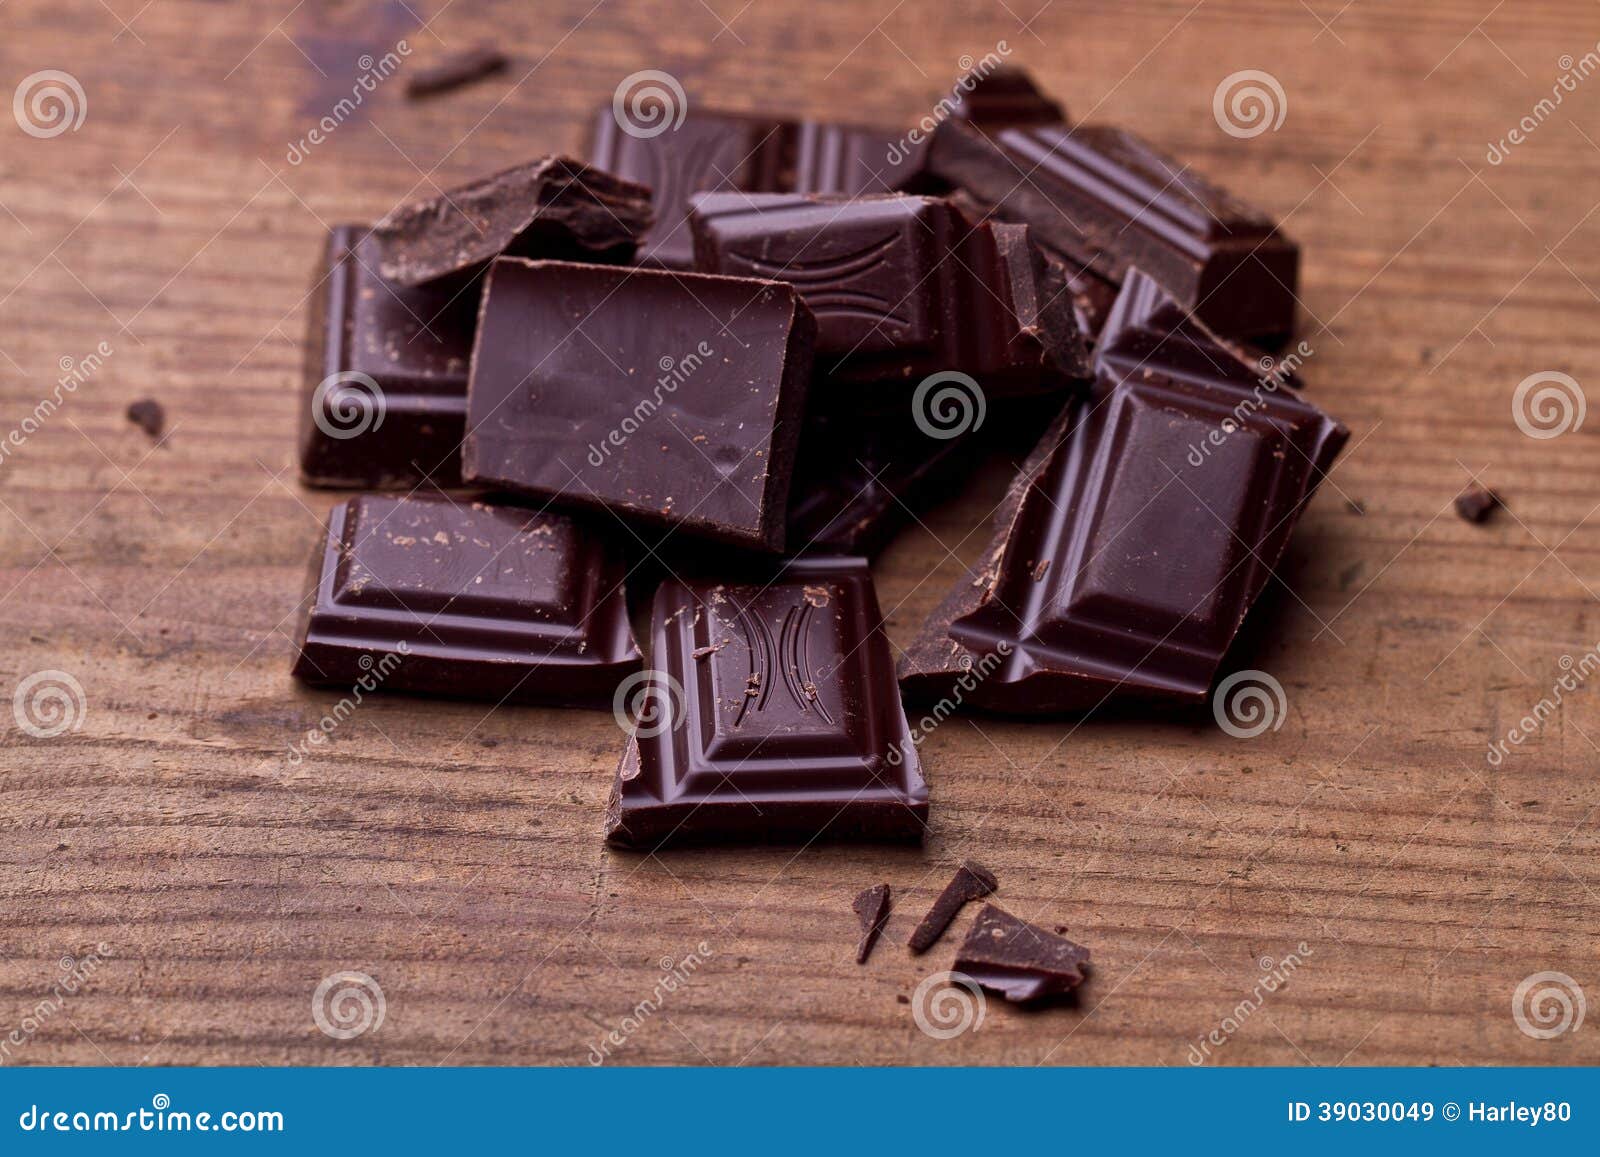 Шоколад вещества. Шоколад курительное вещество. Таблетки напоминающие шоколад. Шоколад с канабиоидами. Chopped Dark Chocolate.